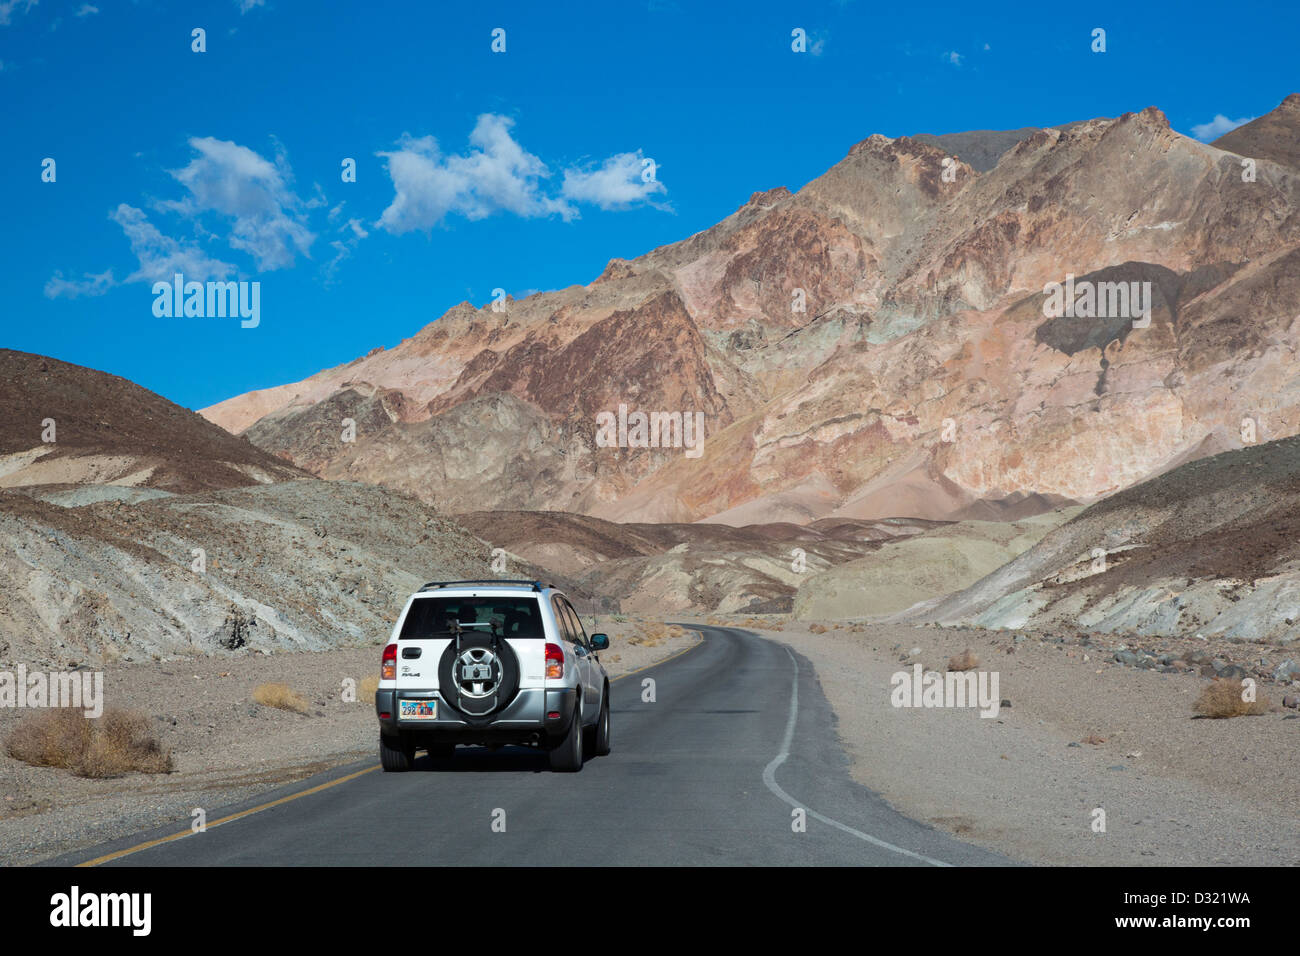 El Parque Nacional Valle de la Muerte, California - Artists Drive, una carretera escénica a través de coloridas montañas volcánicas y sedimentarias. Foto de stock